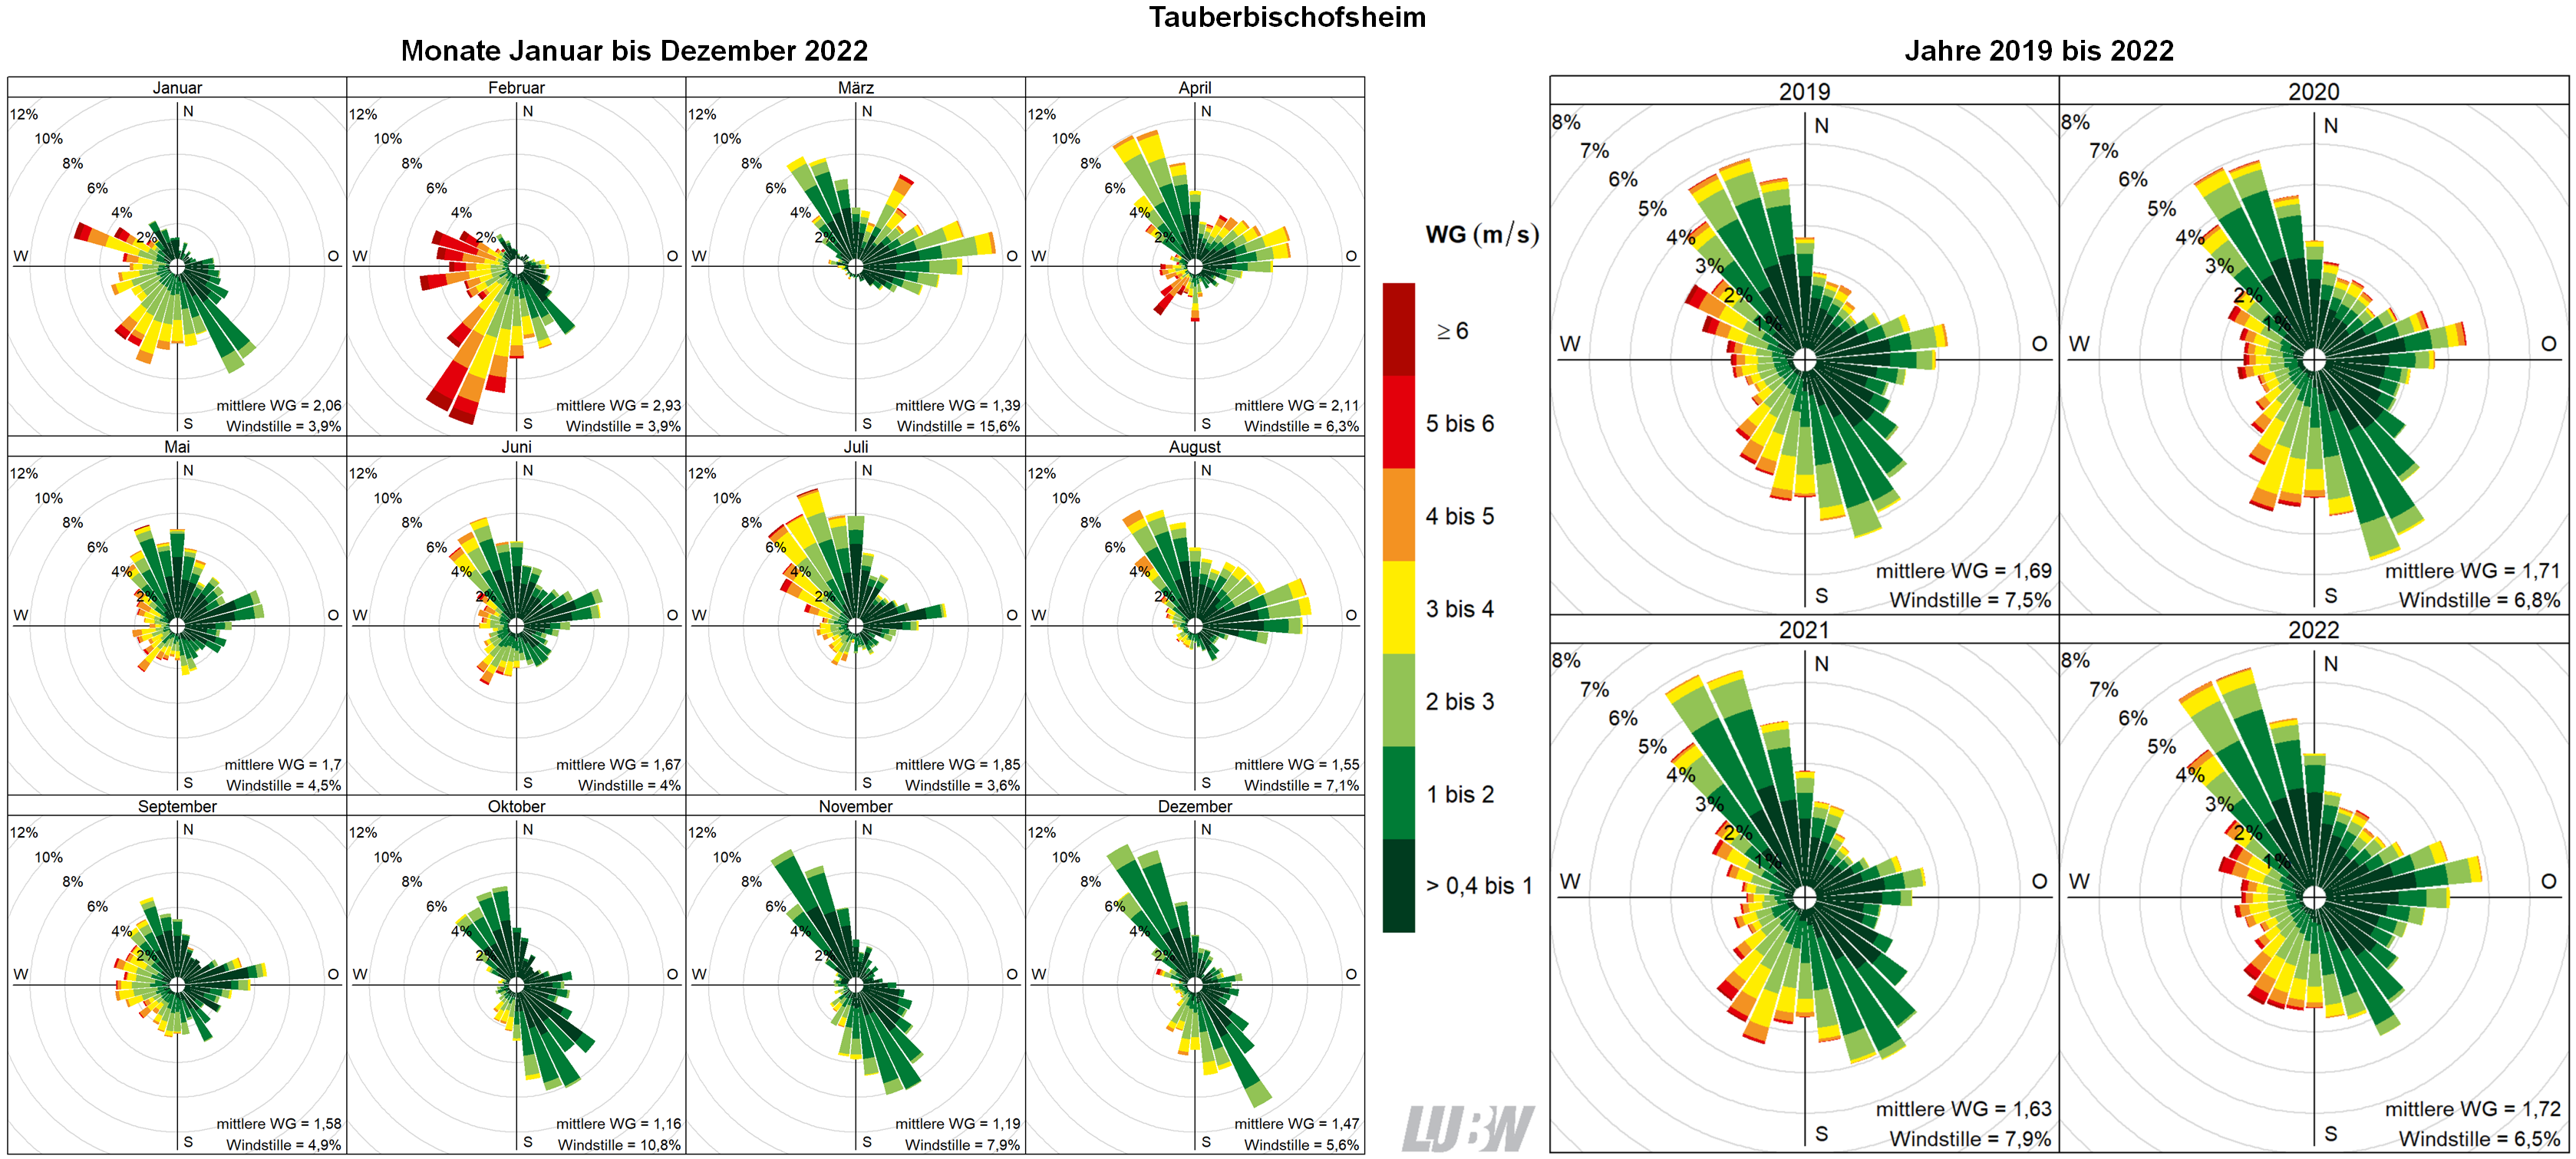  Mitttlere Windverteilung als Windrosen für die Monate Januar bis Dezember 2022 (linke Abbildung) sowie für die Jahre 2019 bis 2022 (rechte Abbildung) für den Standort Tauberbischofsheim. Weitere Informationen im umliegenden Text. 